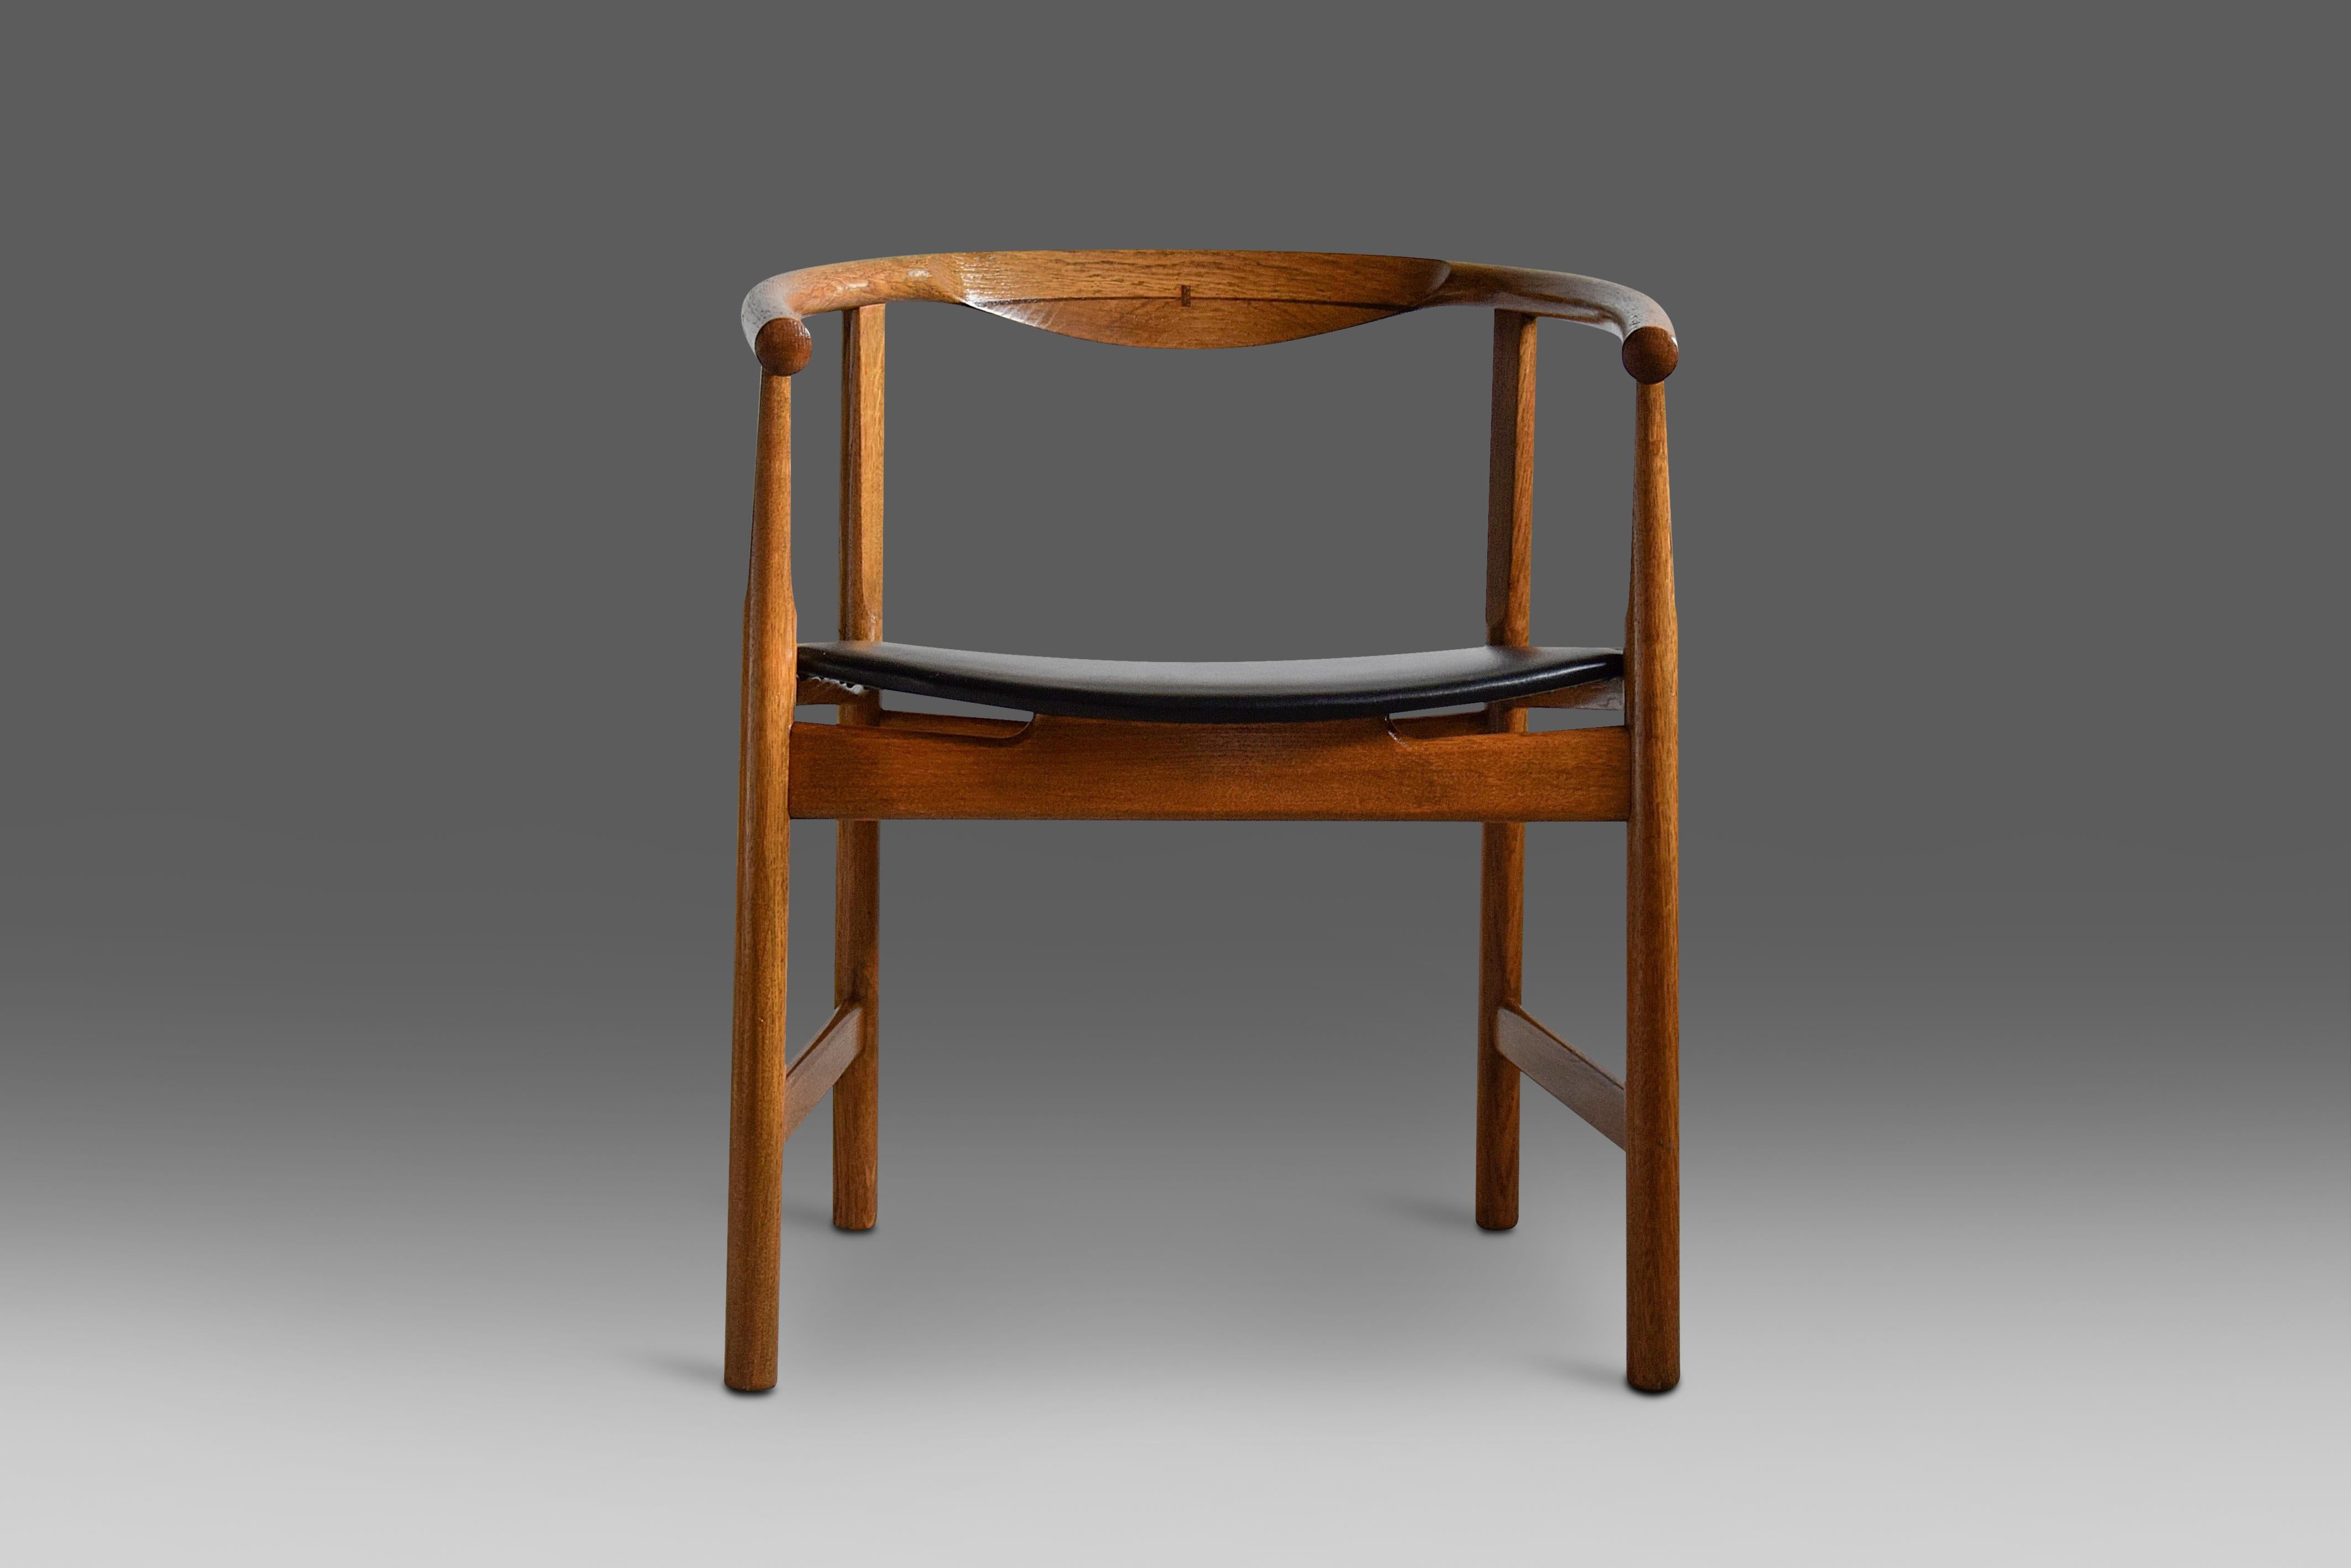 Ein seltenes und beeindruckendes Set von PP 203 Stühlen, die von Hans Wegner 1969 entworfen und in dieser Anfangszeit produziert wurden. Das Set ist in sehr gutem Zustand und das Eichenholz wurde in den letzten 40 Jahren mit Öl behandelt. Ein